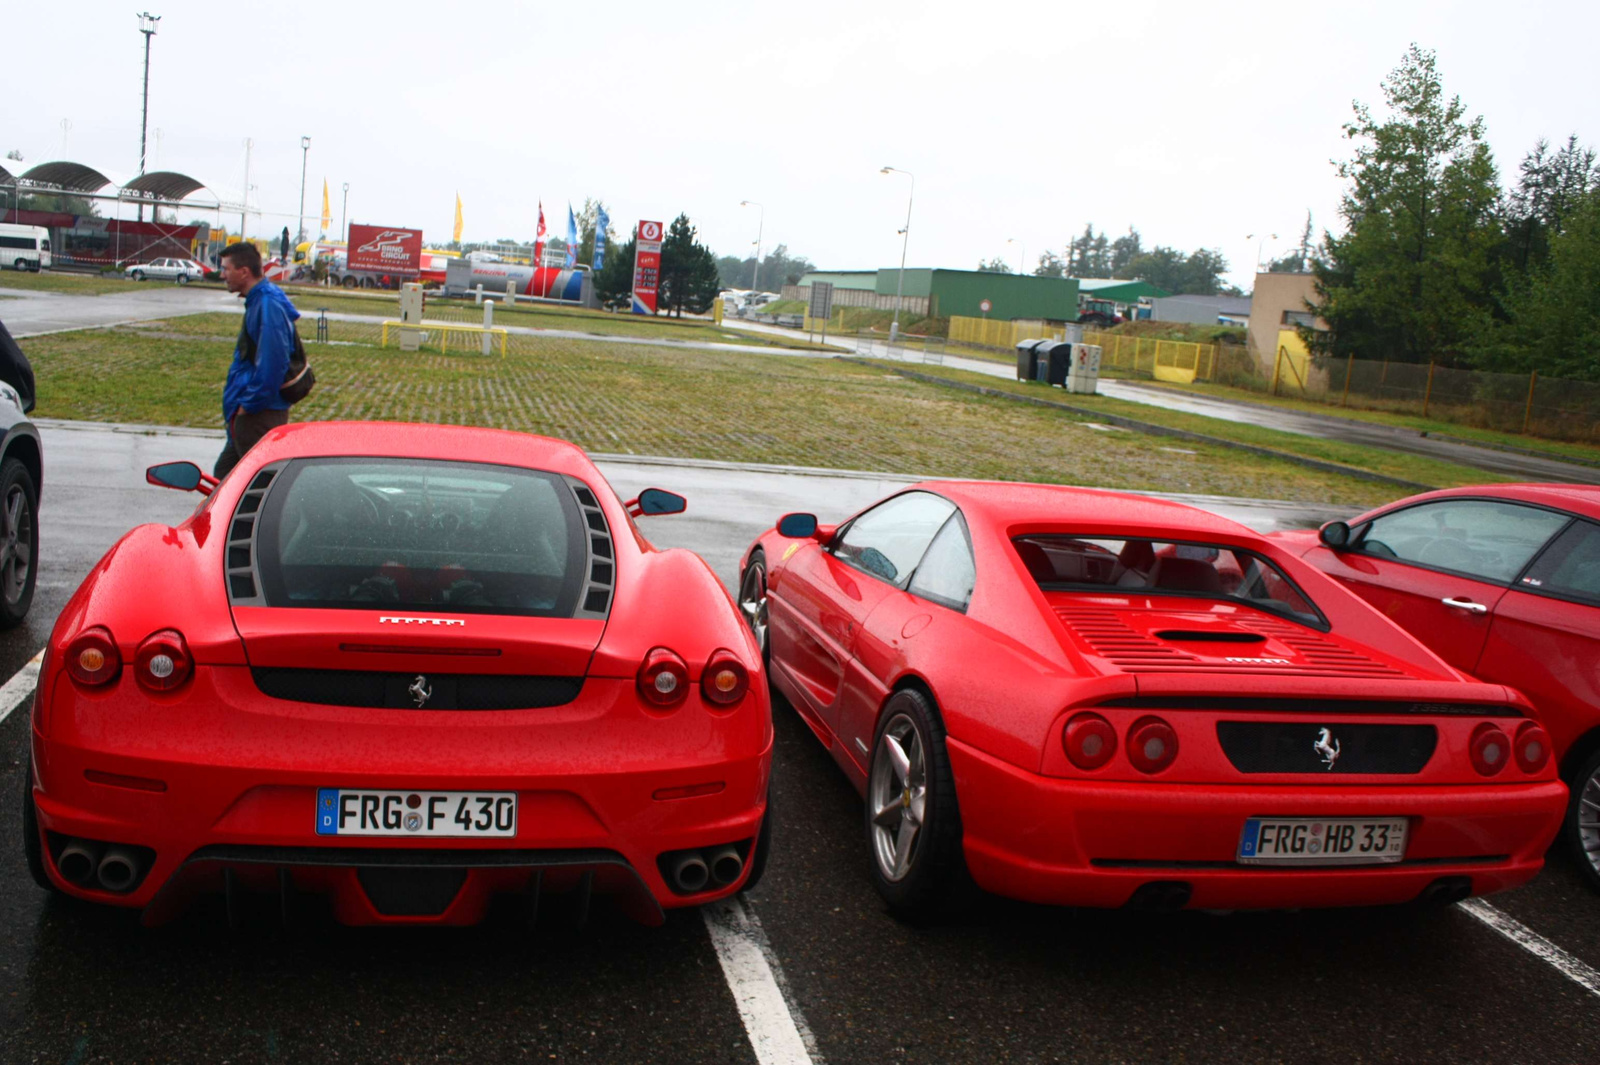 Ferrari F430 & F355 Berlinetta